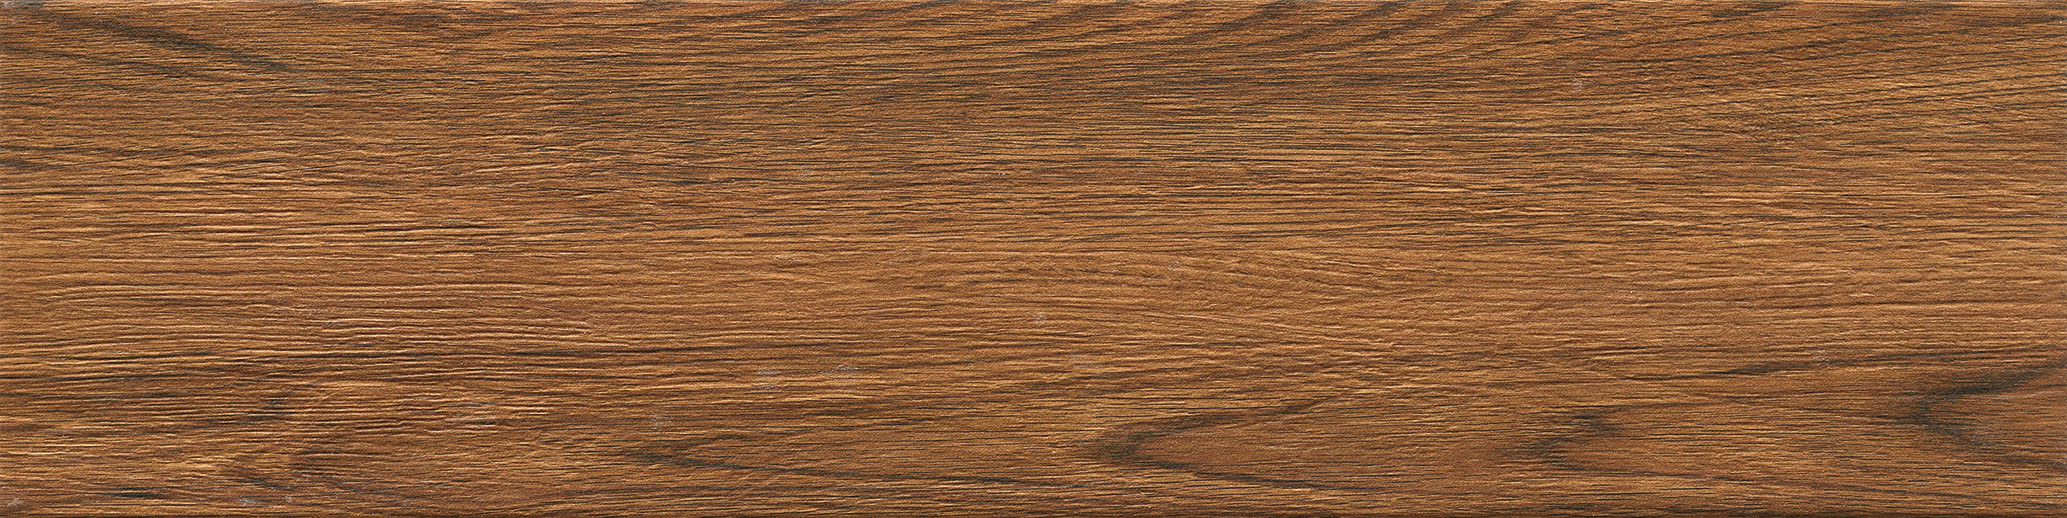 150X600mm Wooden Flooring Wood Stair Design Wood Look Ceramic Tiles